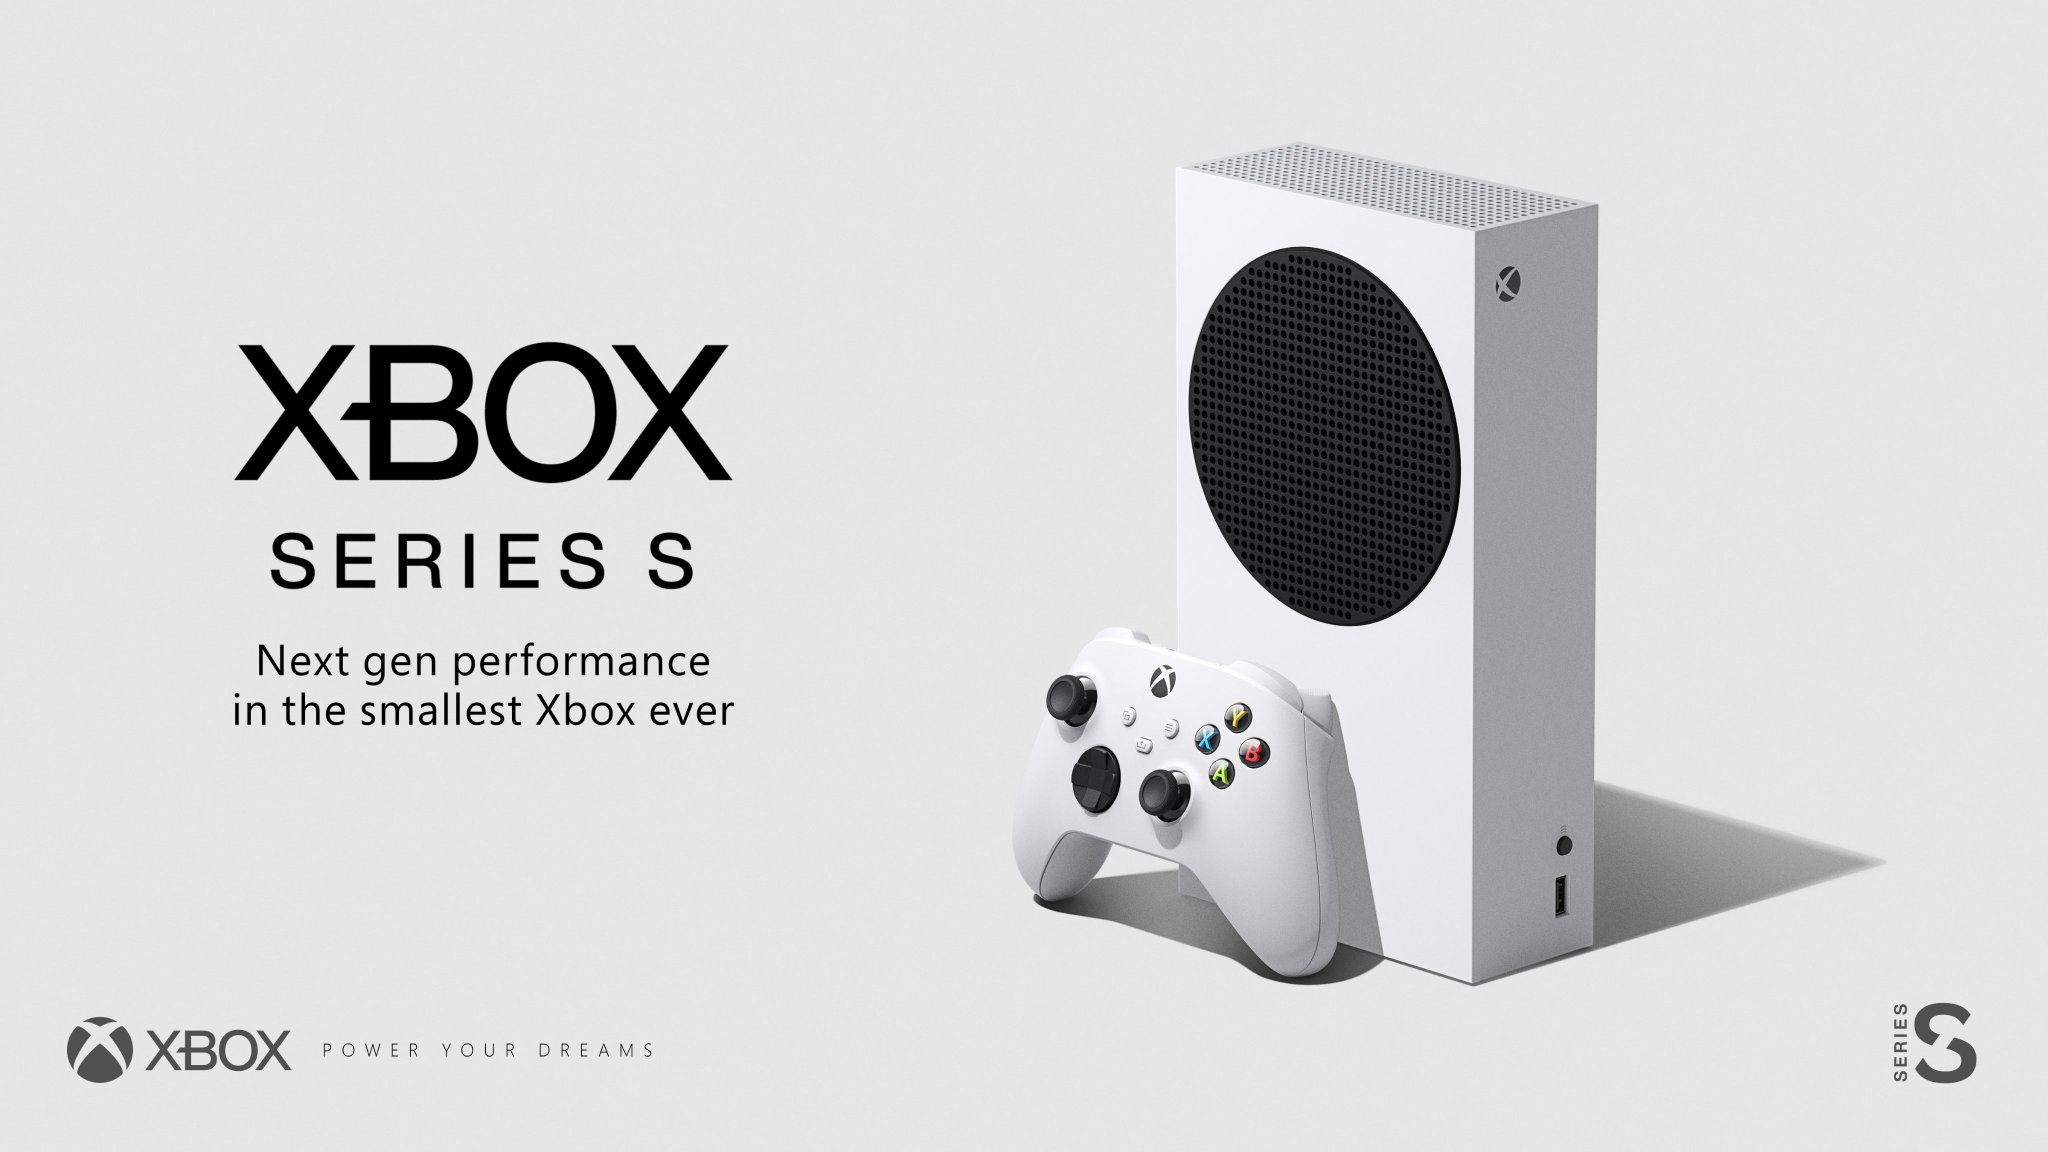 マイクロソフト、Xbox Series Sを正式公開。299ドルで 「史上最小サイズに次世代の性能」